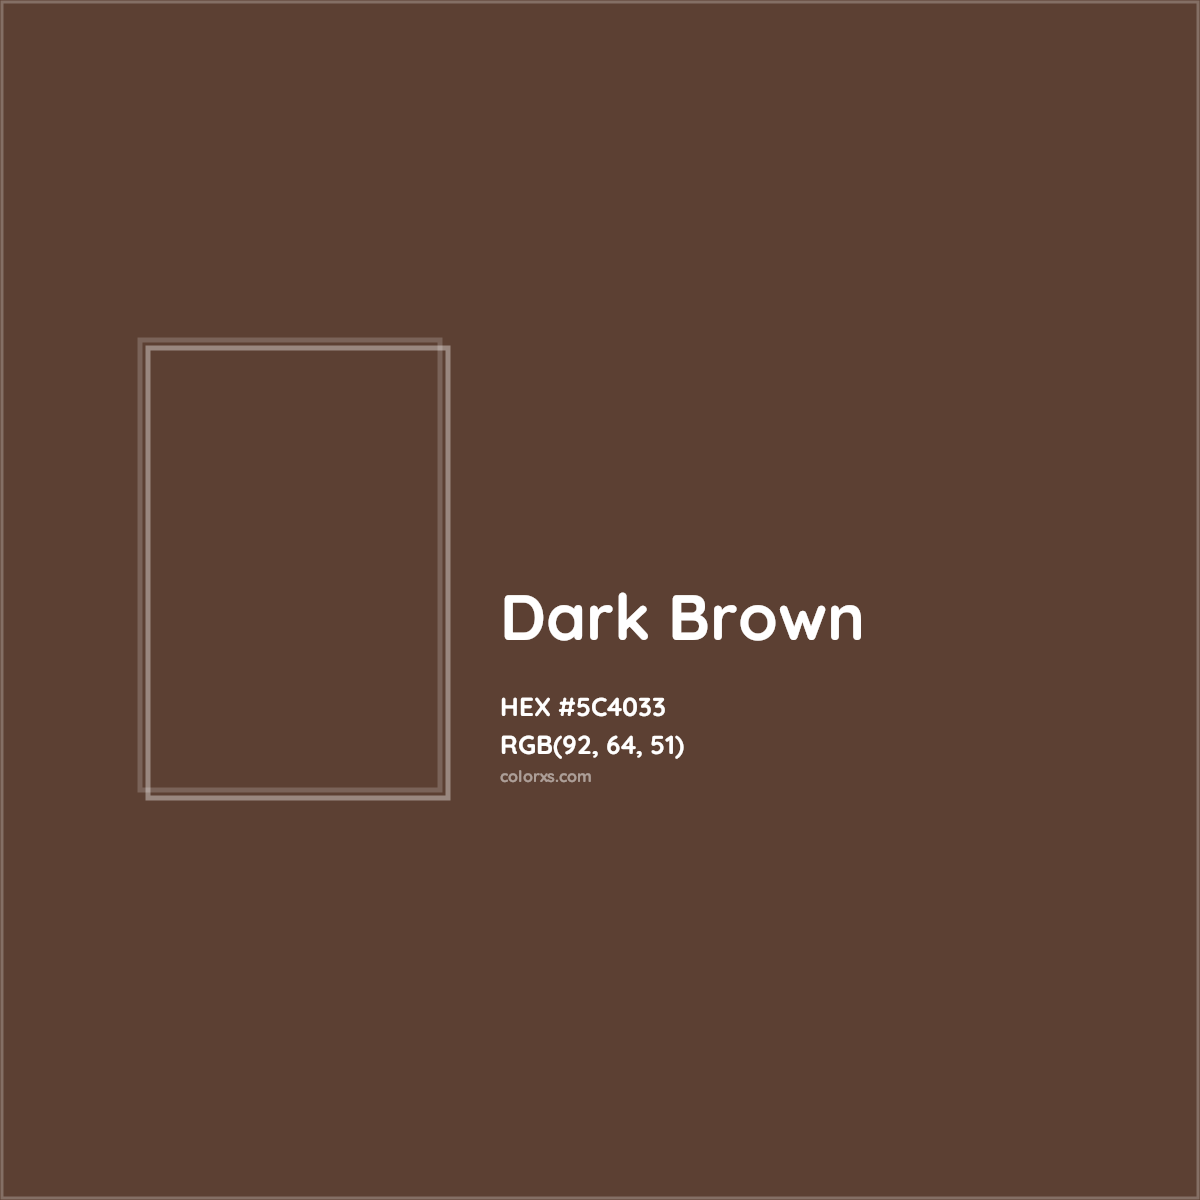 Dark Brown - wide 2